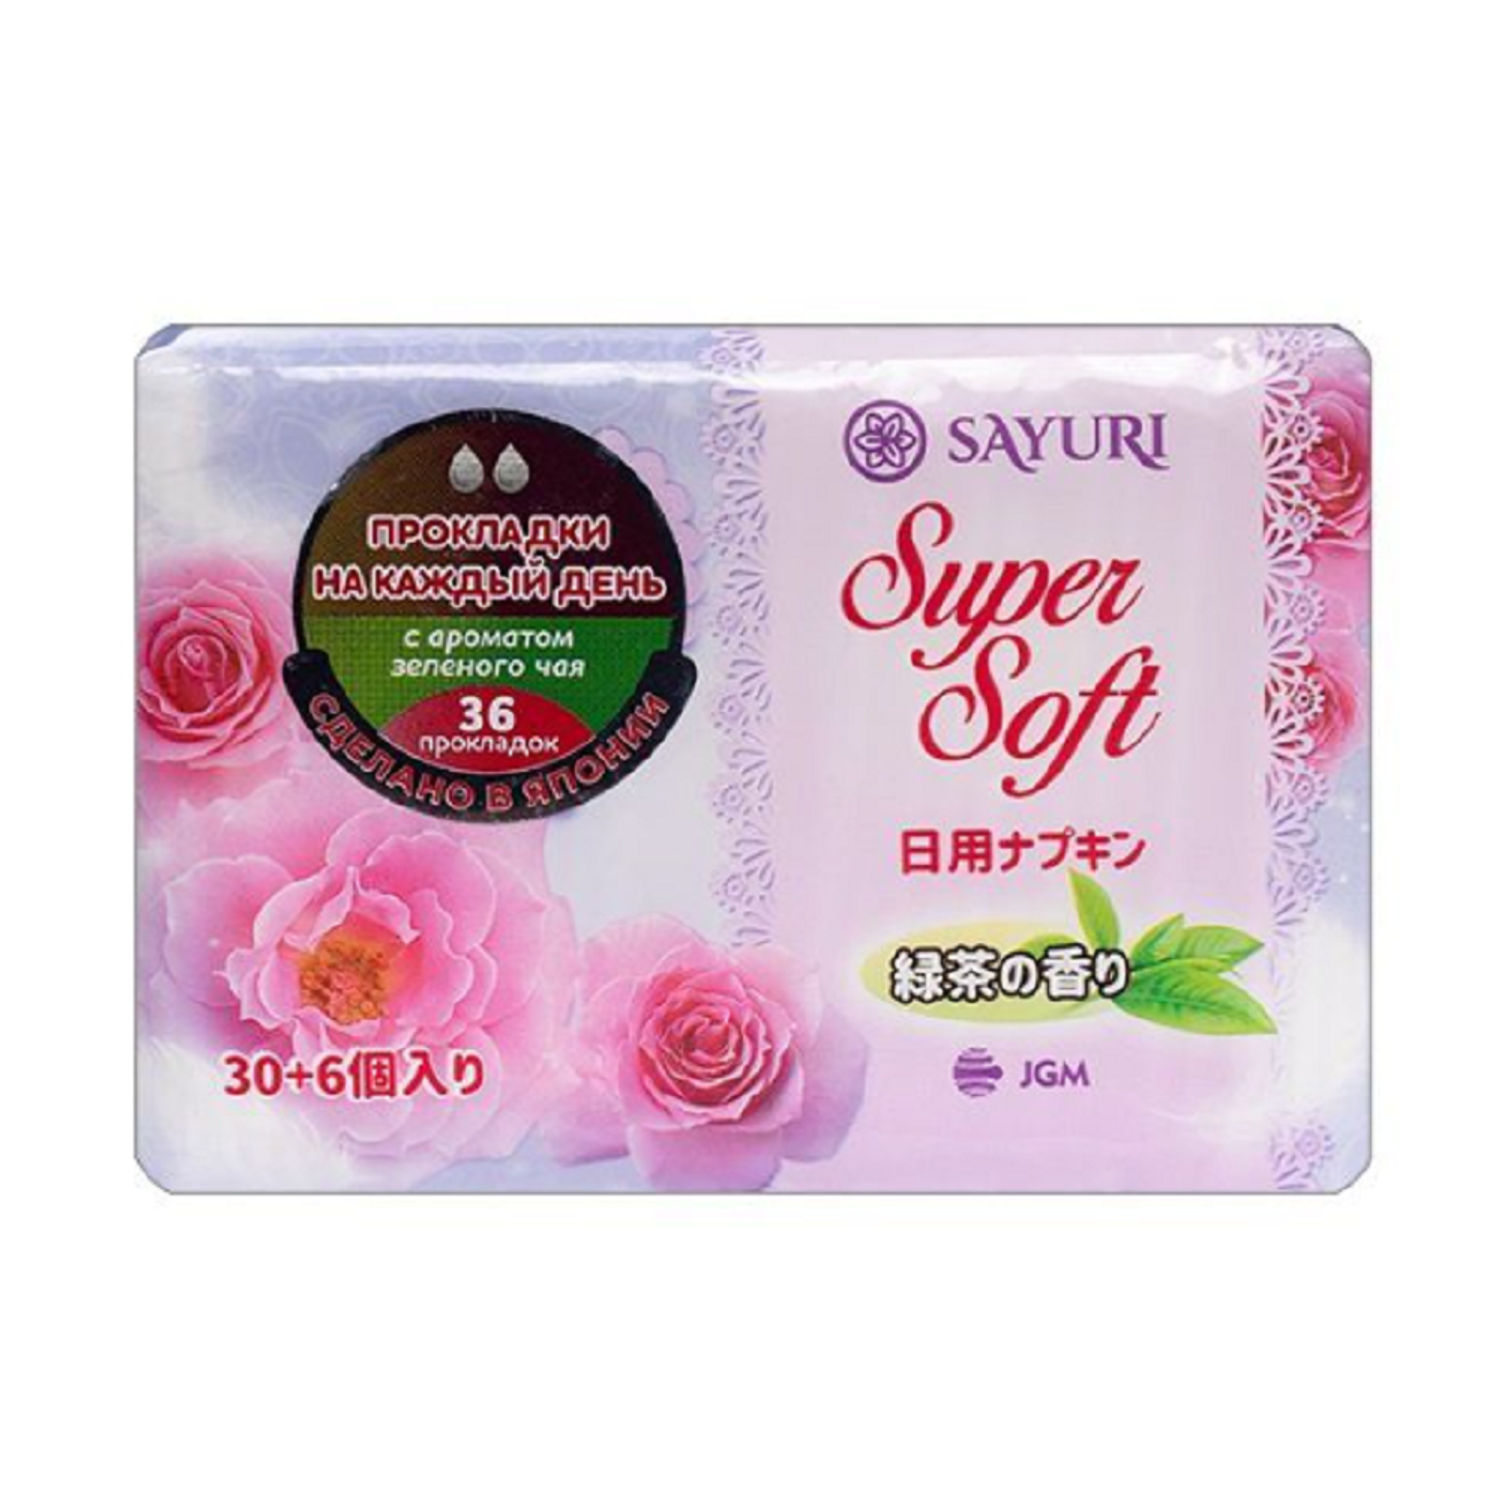 Ежедневные прокладки SAYURI Super Soft c ароматом зеленого чая - фото 1